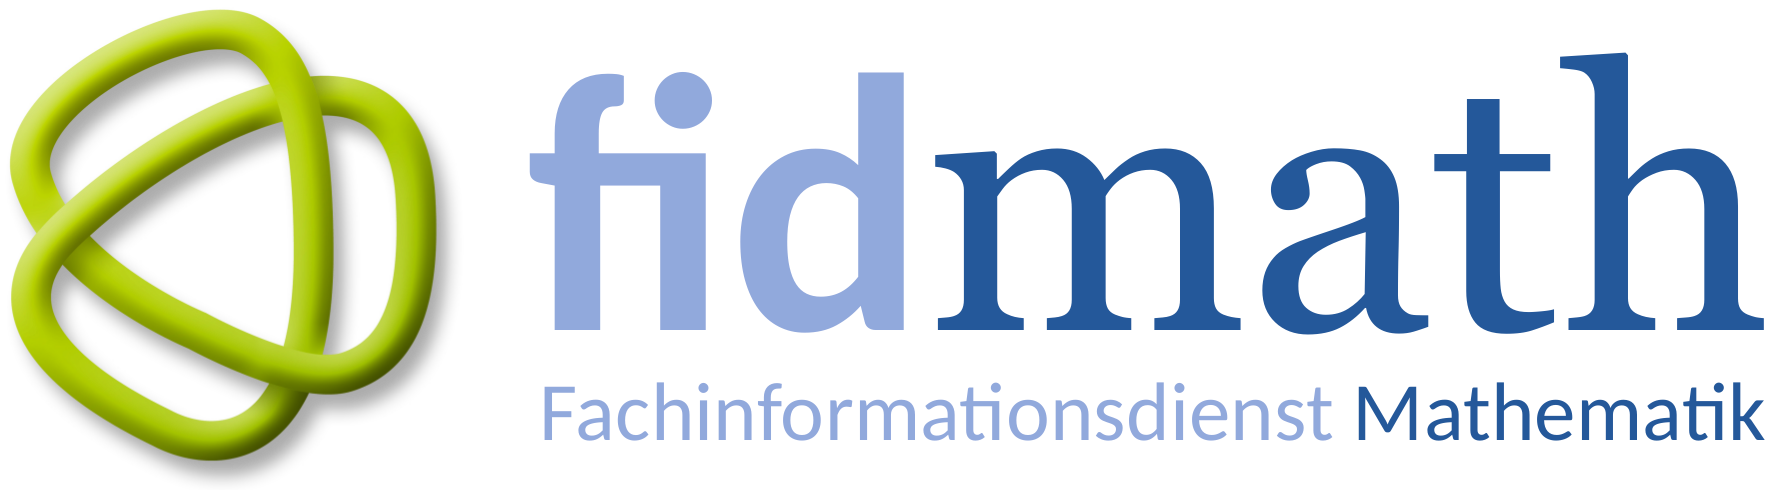 Fachinformationsdienst Mathematik Logo